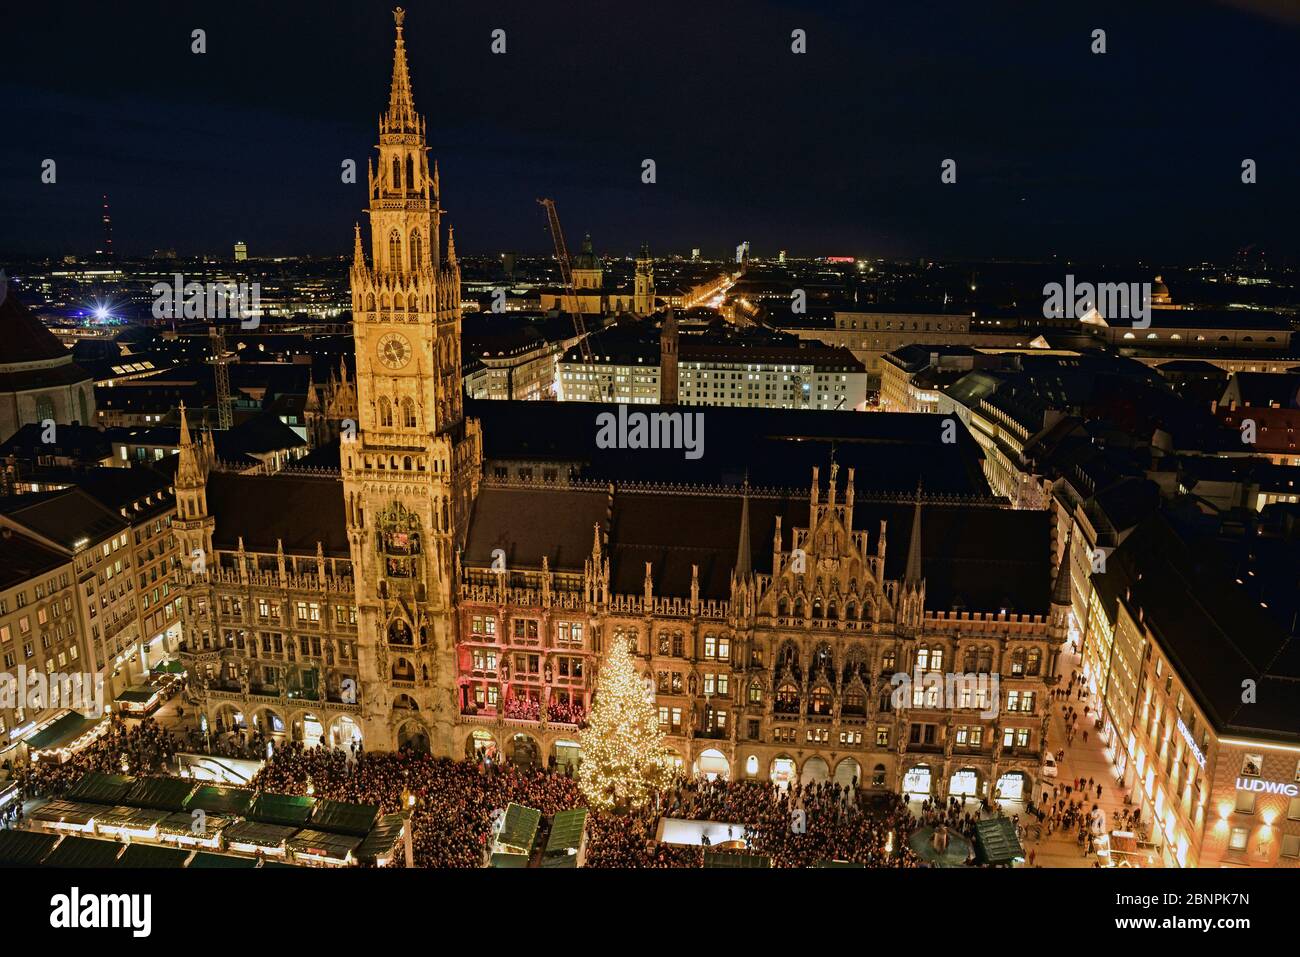 Europa, Deutschland, Bayern, München, Blick von St. Peter, Marienplatz, Weihnachten, Neues Rathaus, Abend, Weihnachtsmarkt, Weihnachtsbaum, Stockfoto